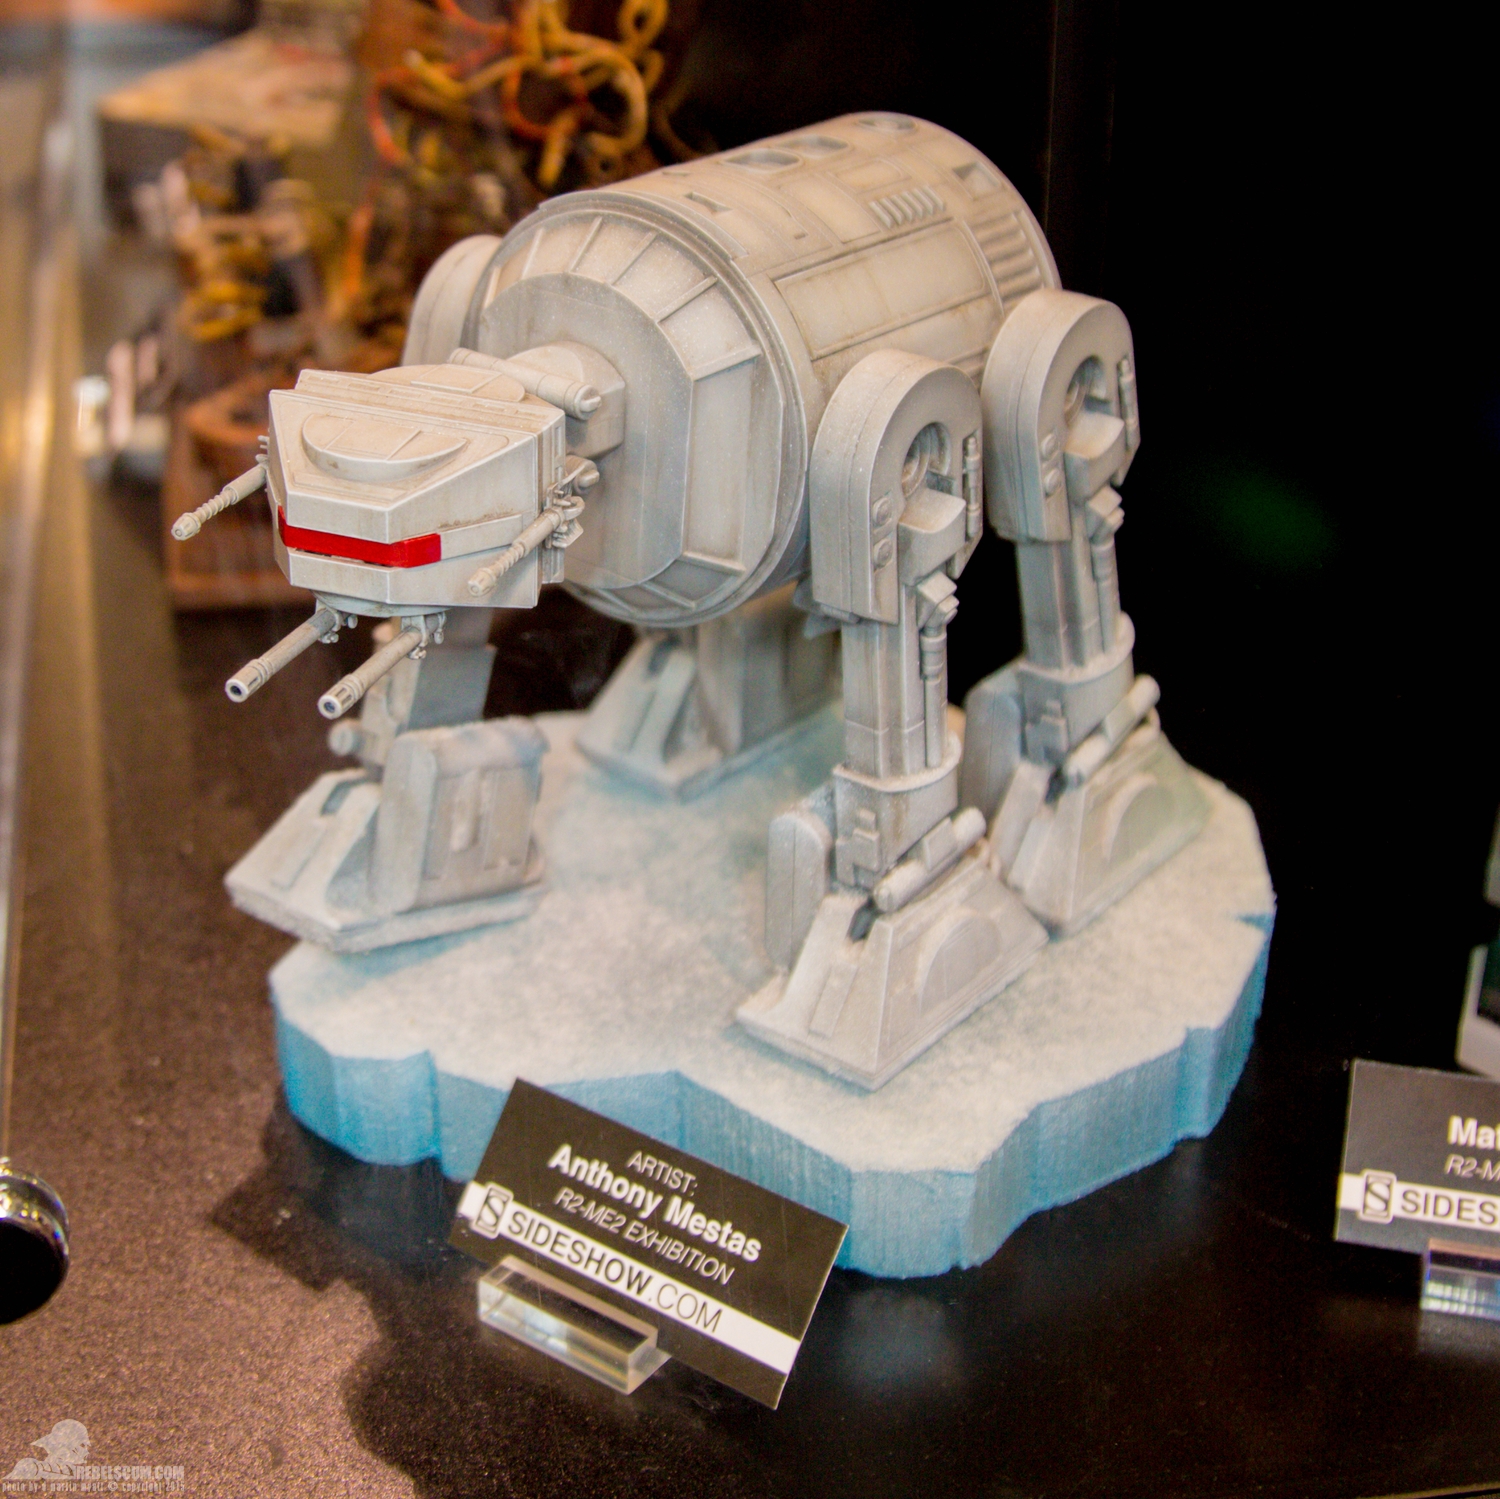 Star-Wars-Celebration-Anaheim-2015-Sideshow-R2-Me2-Exhibit-026.jpg